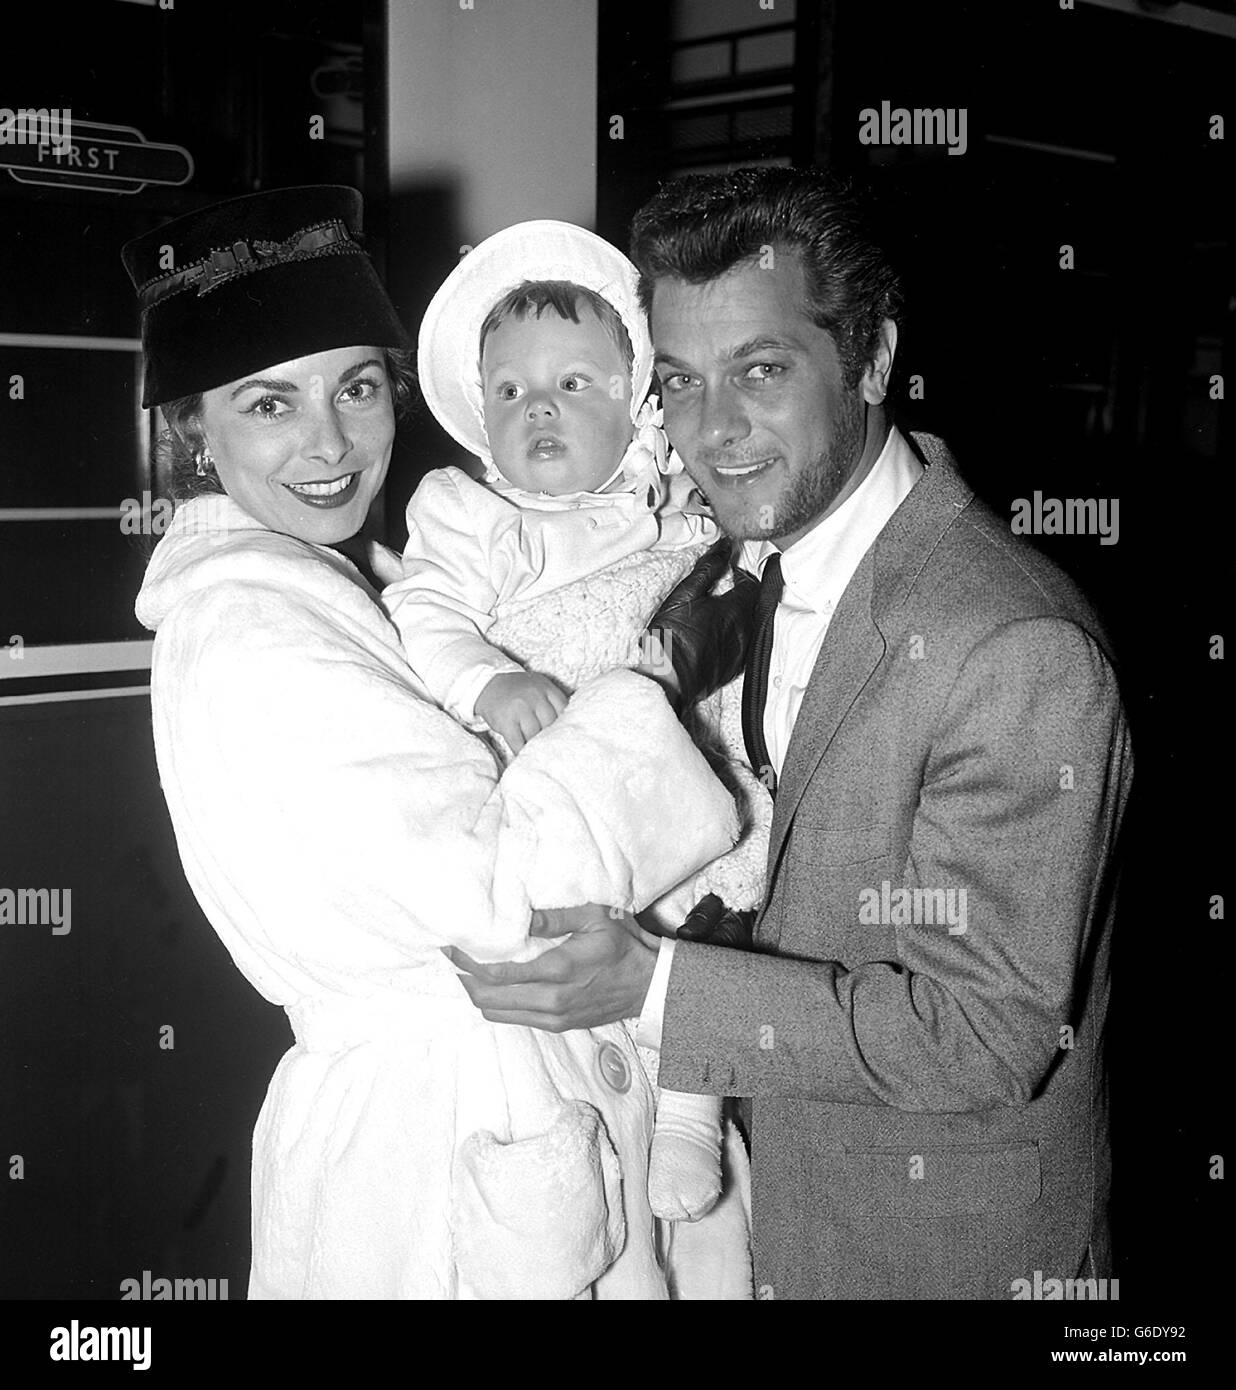 La 'famiglia ideale' di Hollywood, l'attore Tony Curtis e la sua attrice, la moglie Janet Leigh e la loro figlia di 11 mesi Kelly alla stazione di Paddington, Londra. Foto Stock